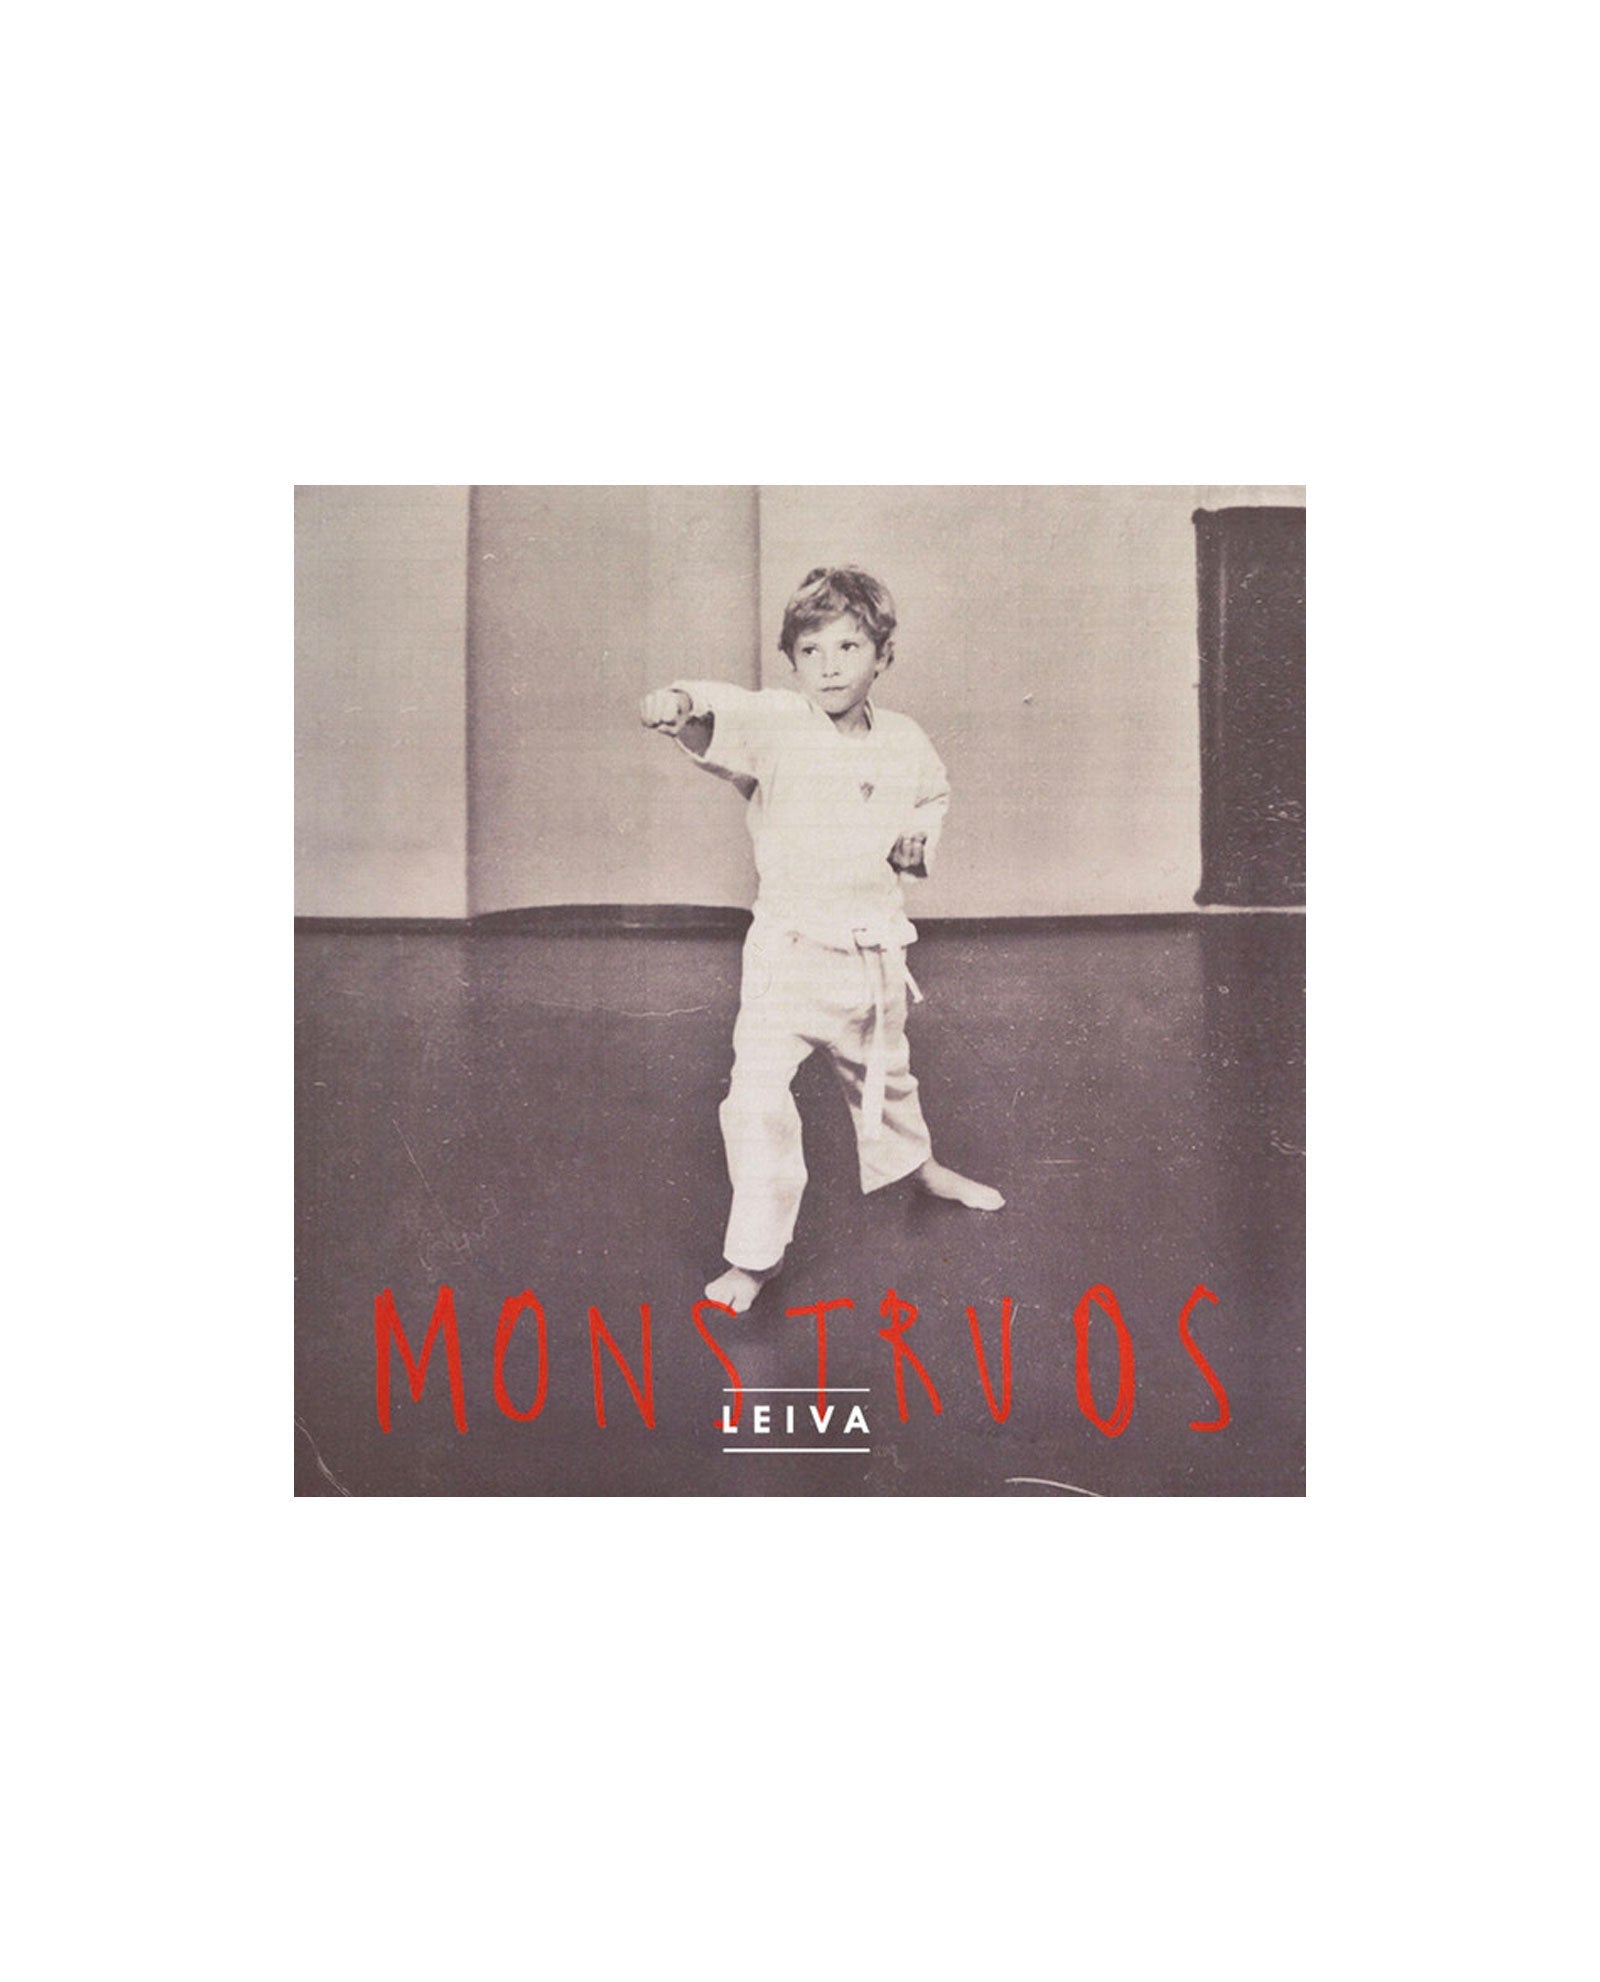 LP MONSTRUOS - LEIVA - Rocktud - Rocktud